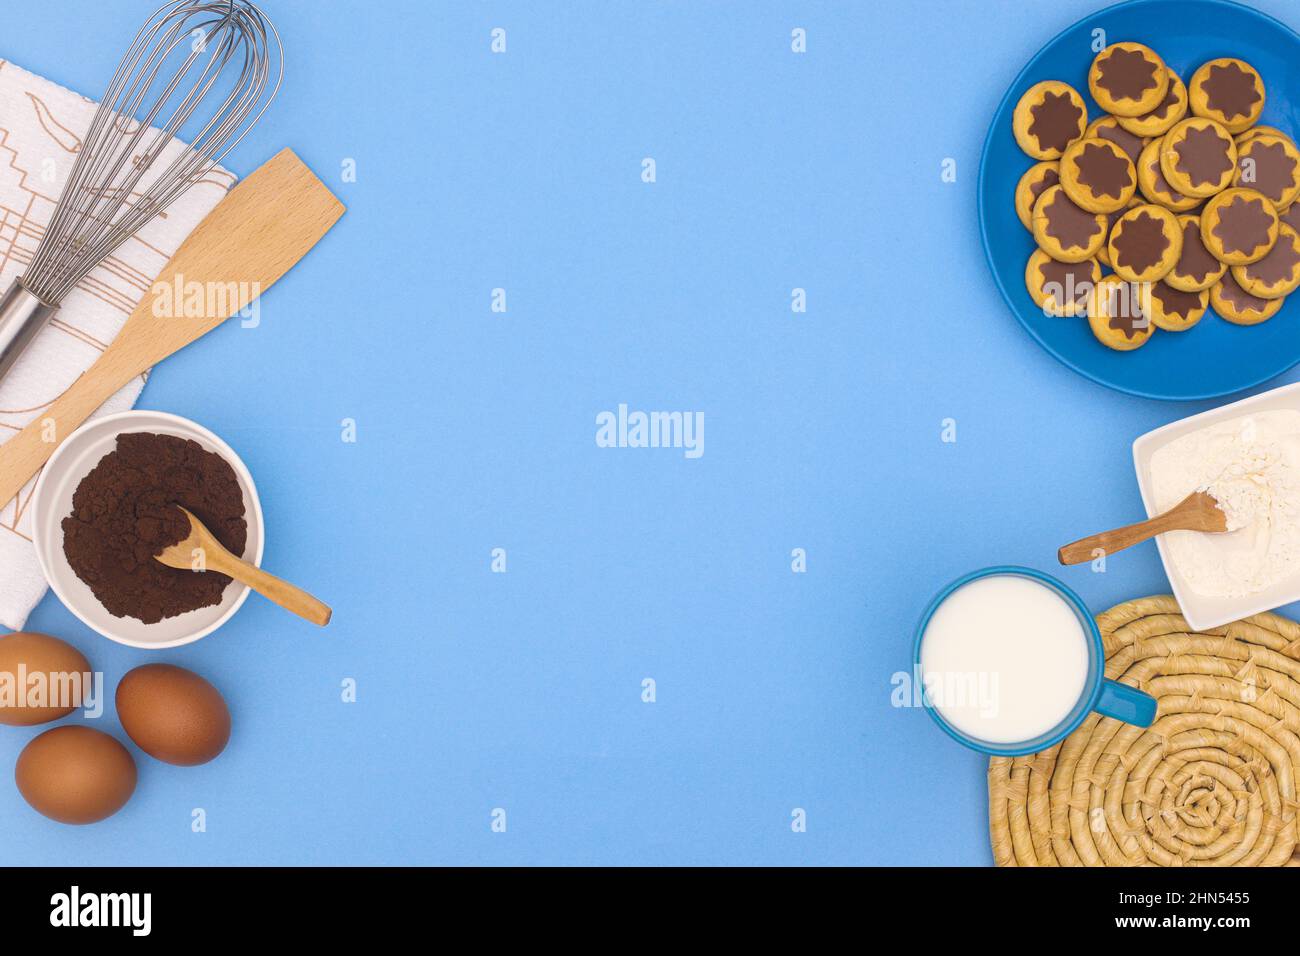 Fondo azul pastel con ingredientes para hacer galletas y postre de seet fresco. Espacio de copia de diseño plano Foto de stock